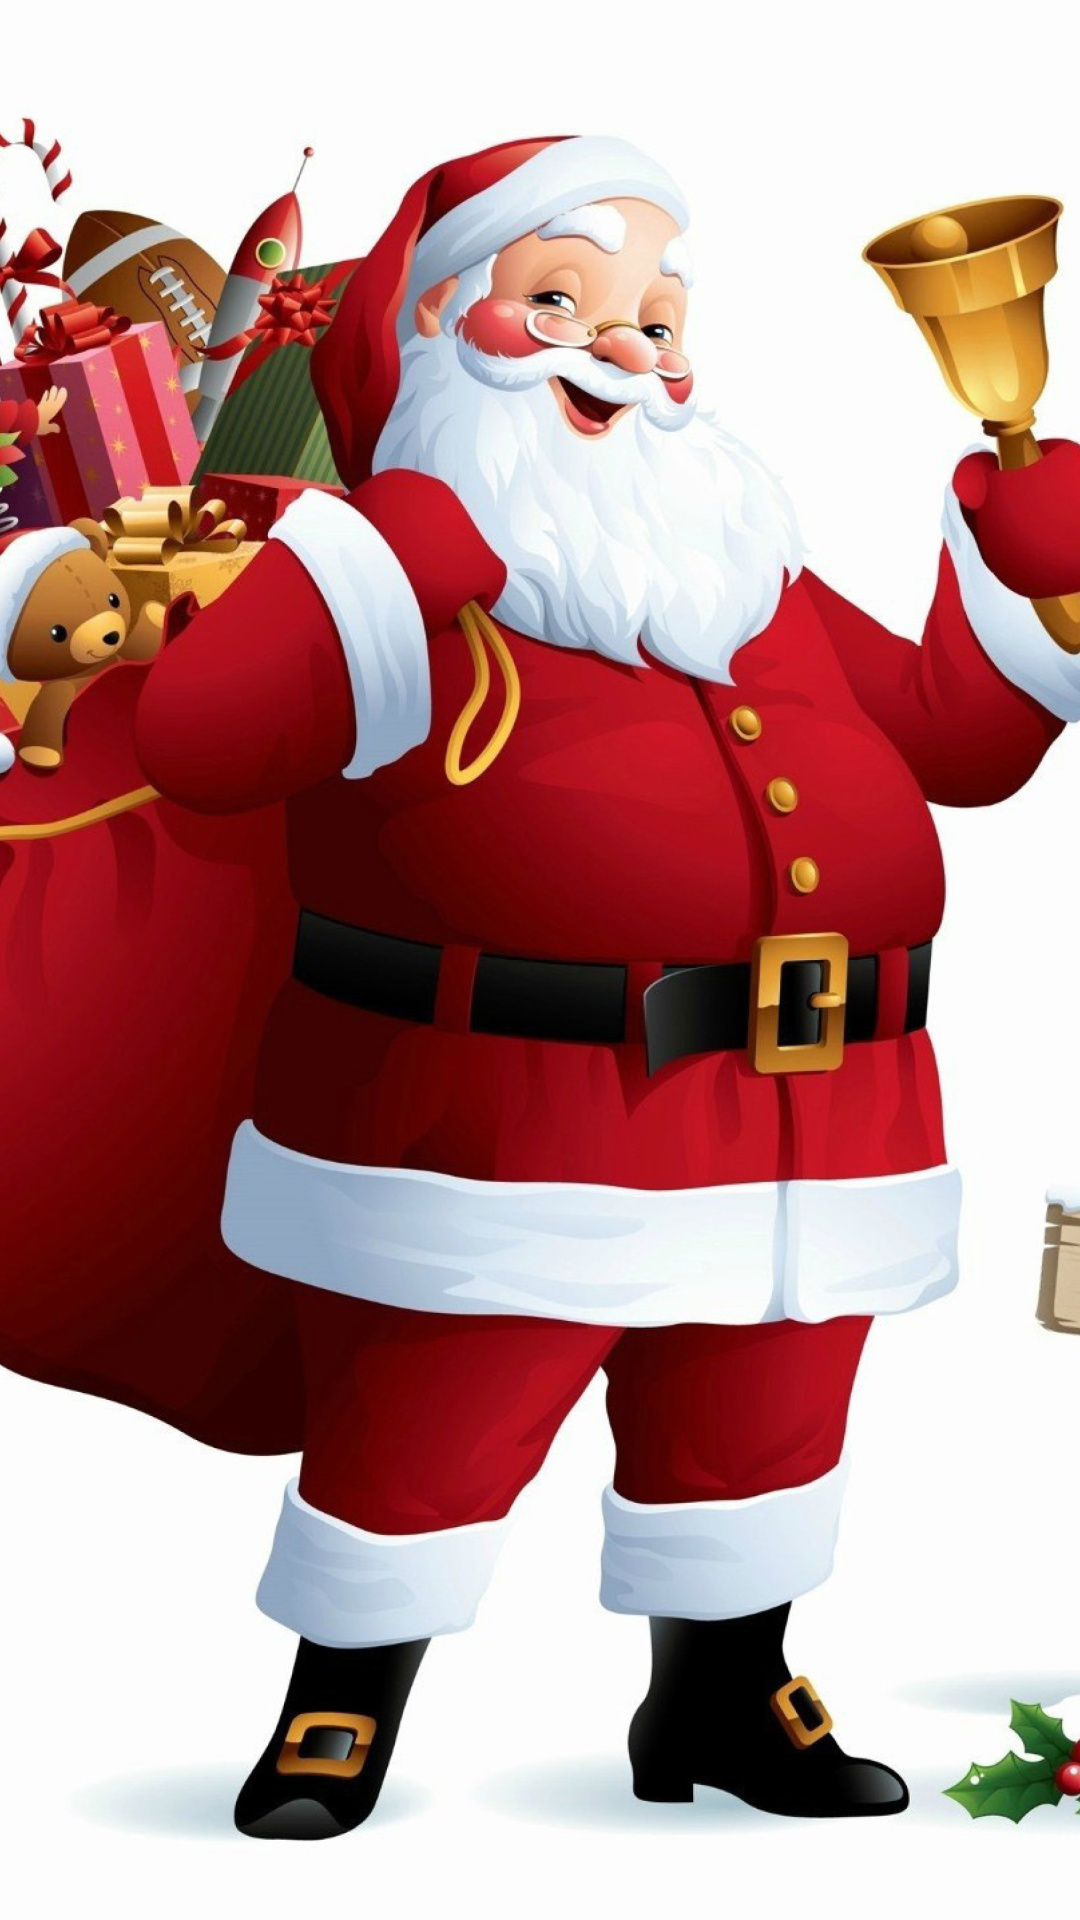 HO HO HO Merry Christmas Santa Claus wallpaper 1080x1920